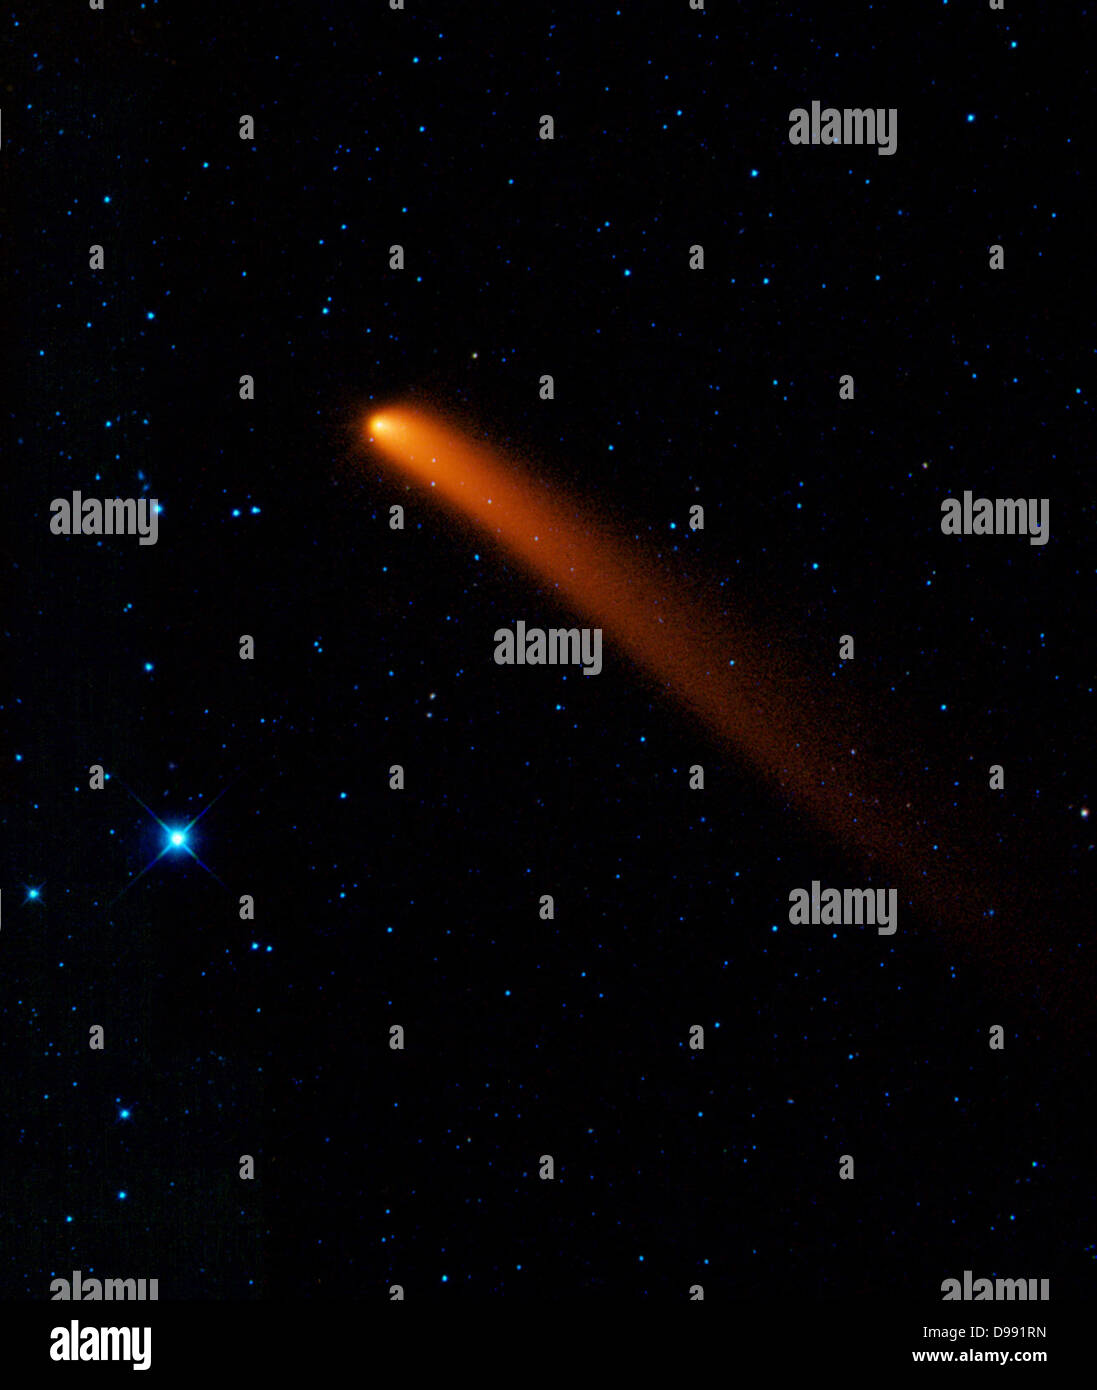 Infrarot-Bild des Kometen Siding Spring (C/2007 Q3) im Jahr 2007 von Beobachtern in Australien entdeckt. Kredit NASA. Wissenschaft-Astronomie Stockfoto